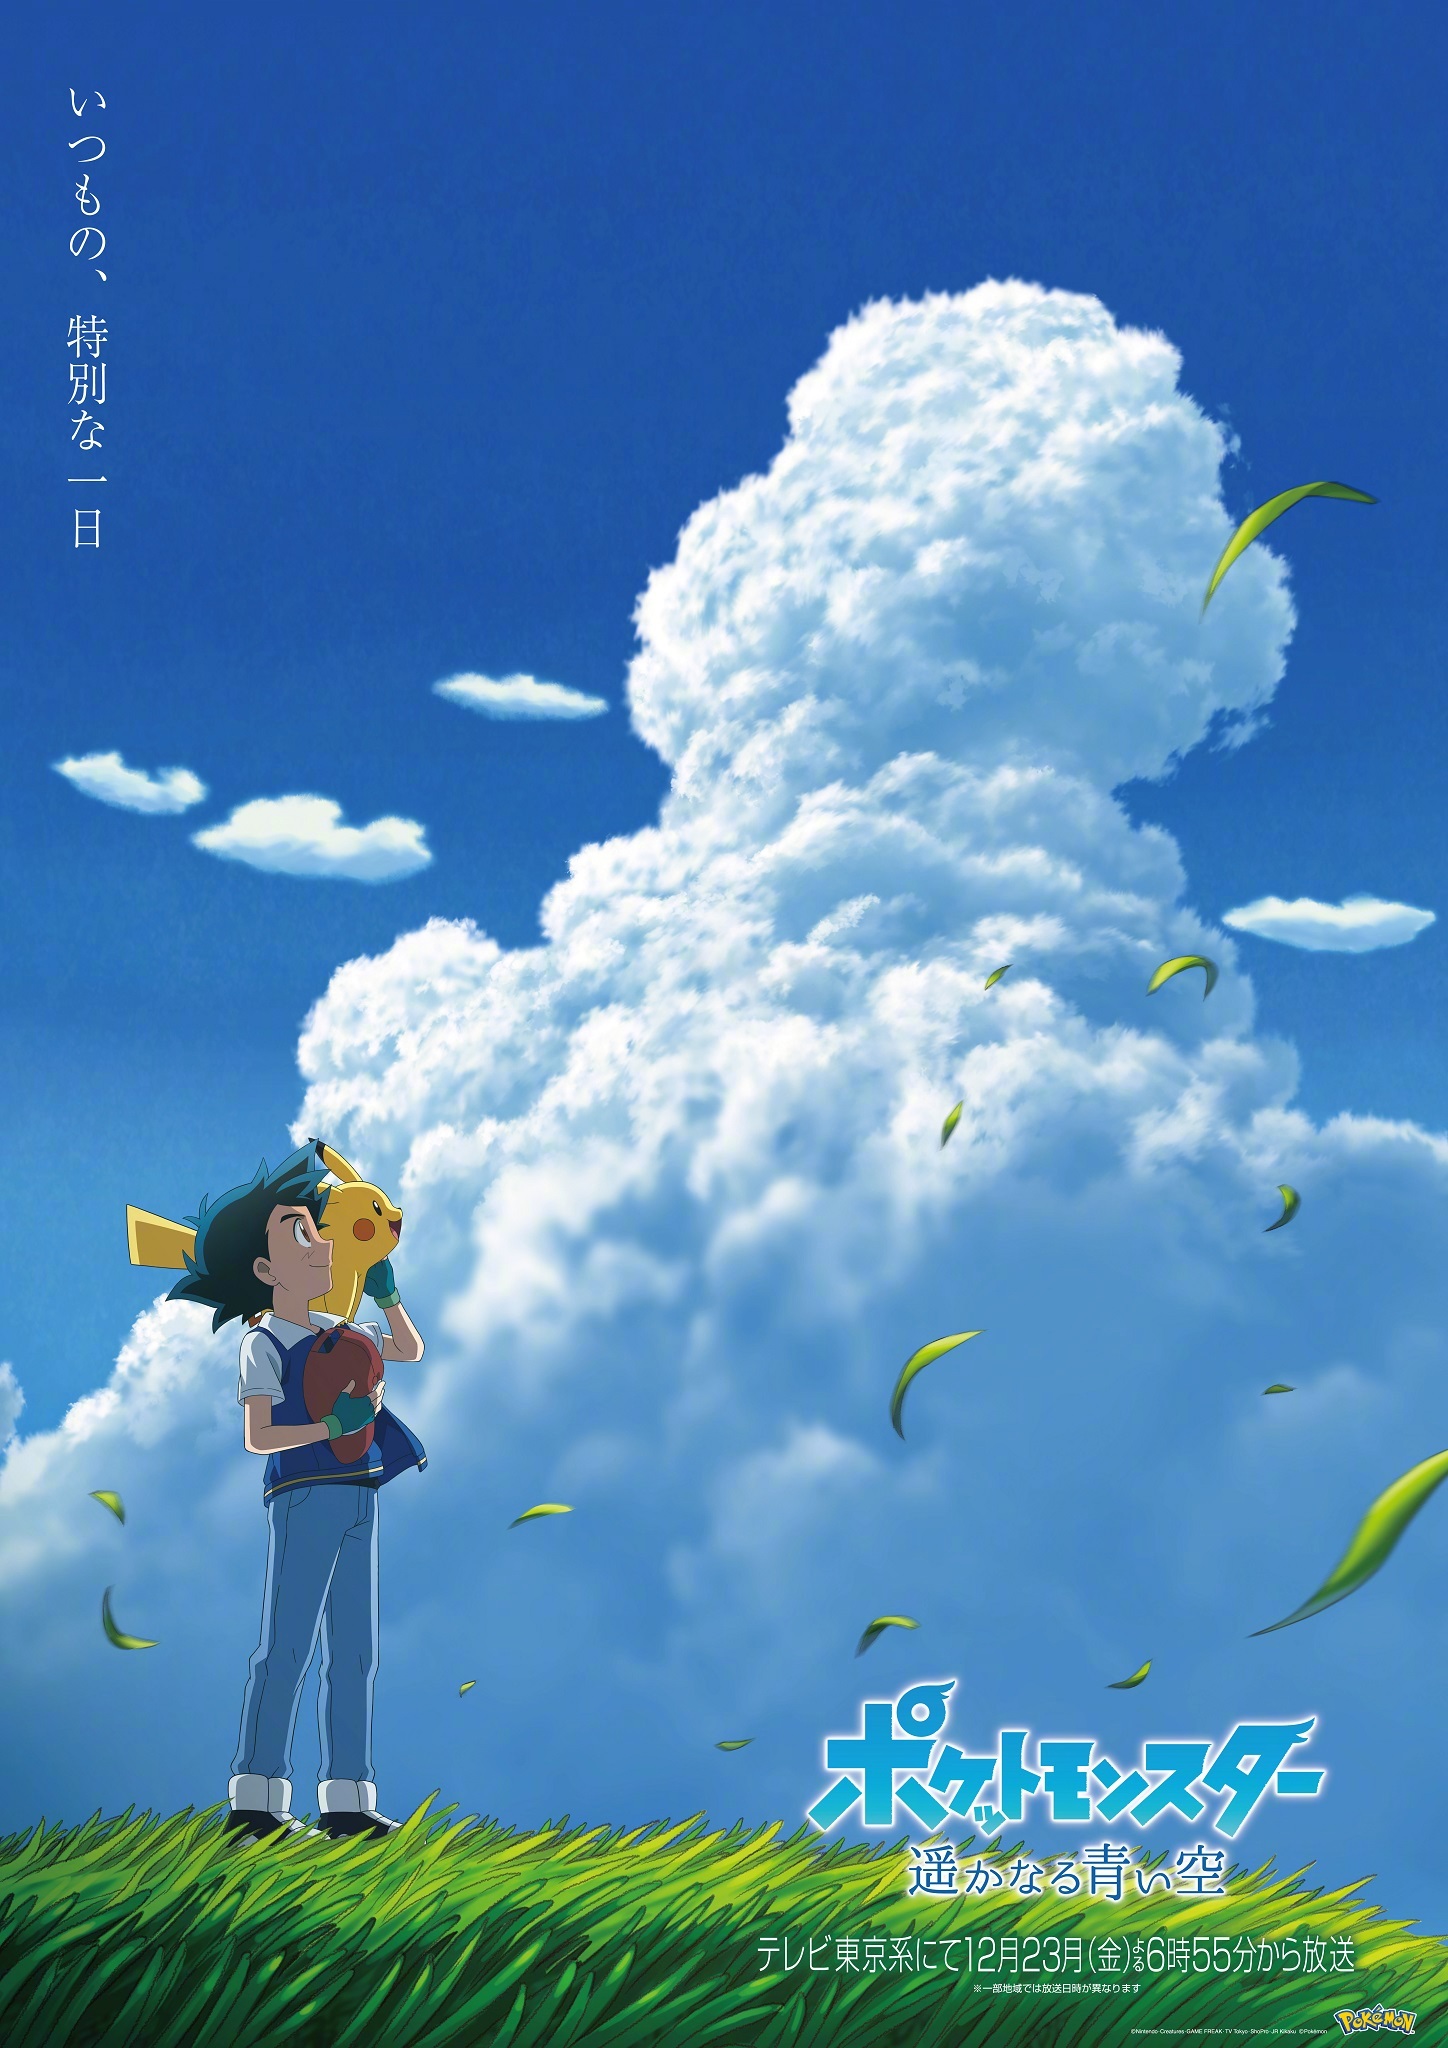 宝可梦25年特别篇《宝可梦 遥远的青空》PV与主视觉图公开